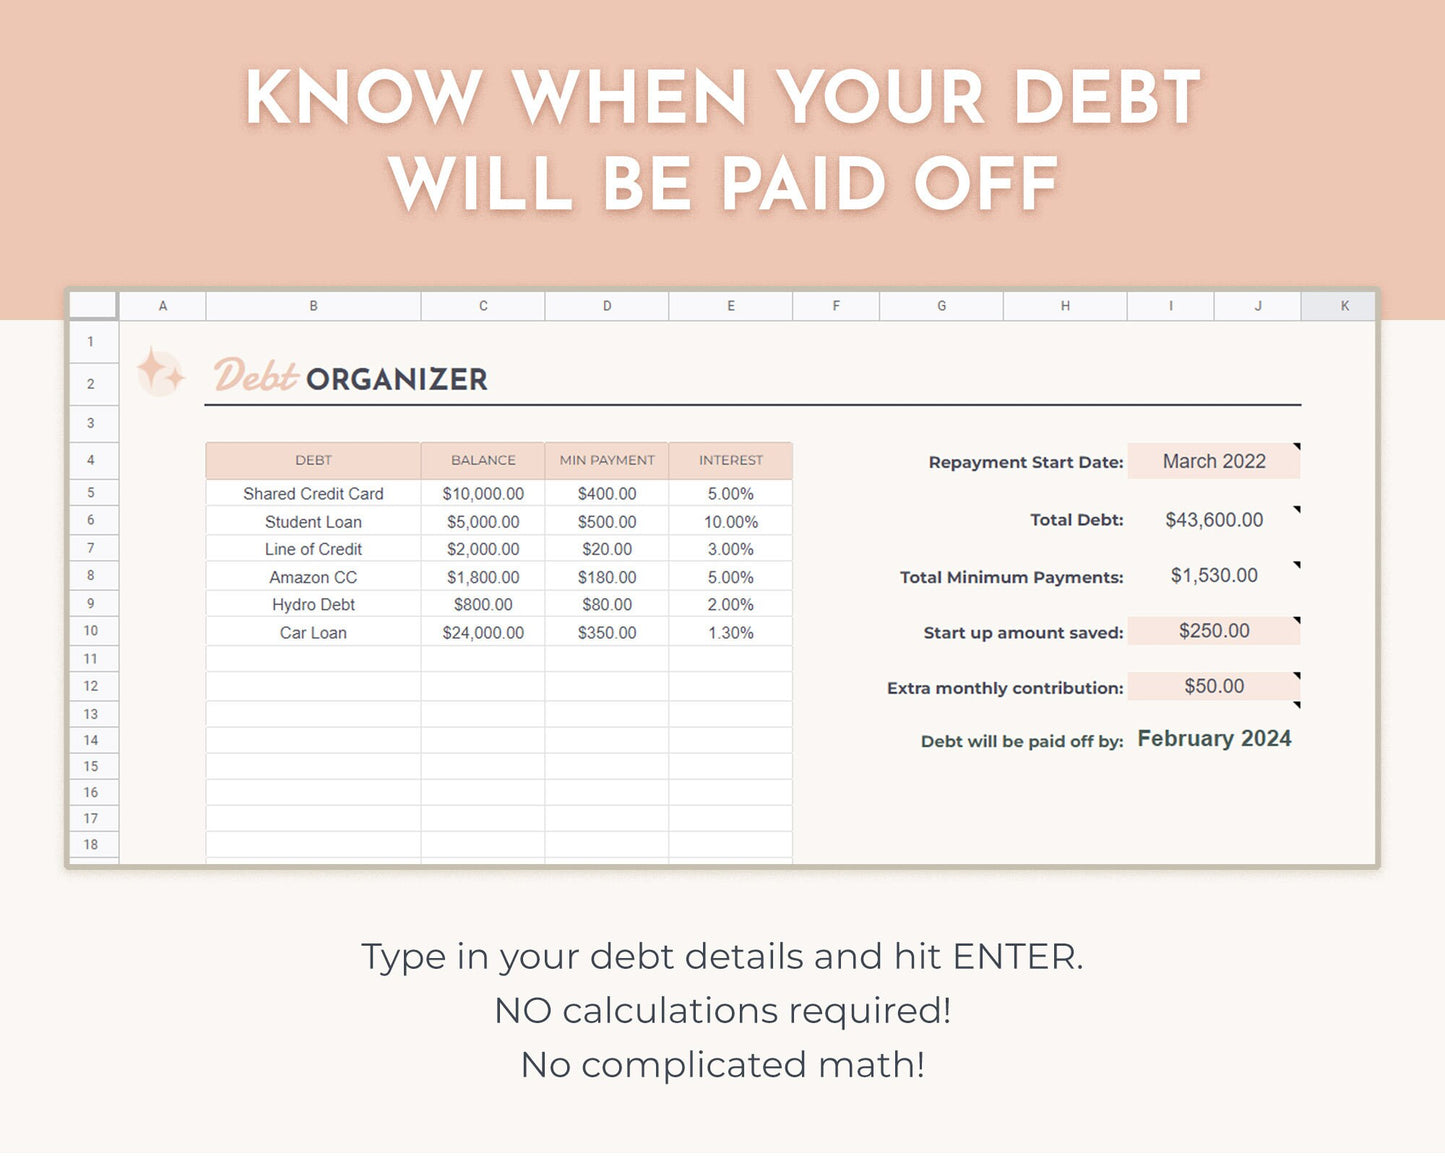 Debt Snowball Calculator